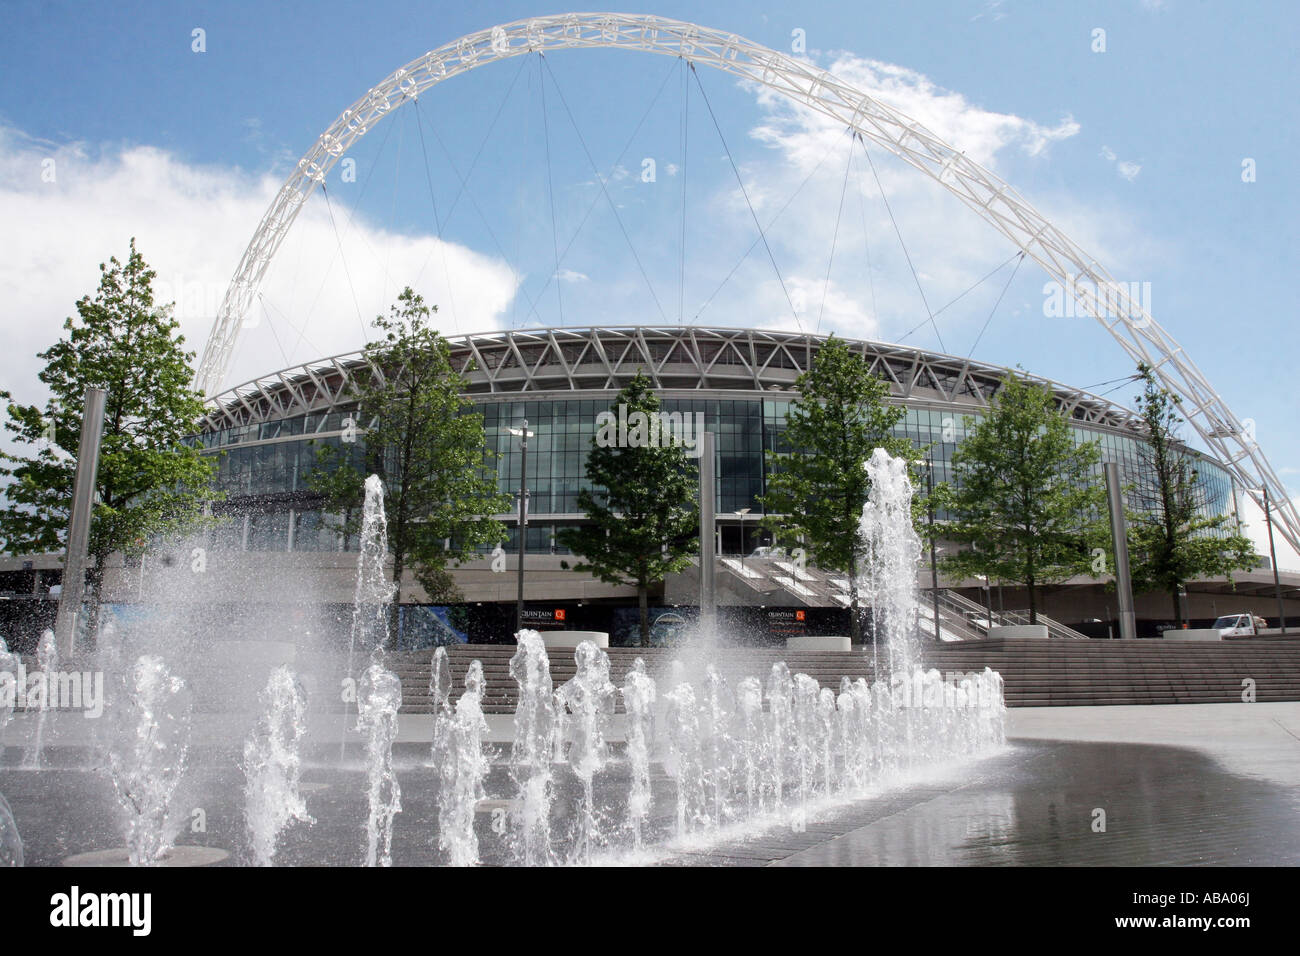 Wembley-Stadion mit Brunnen im Vordergrund, North West London, England. Von außen Wembley Arena gesehen Stockfoto